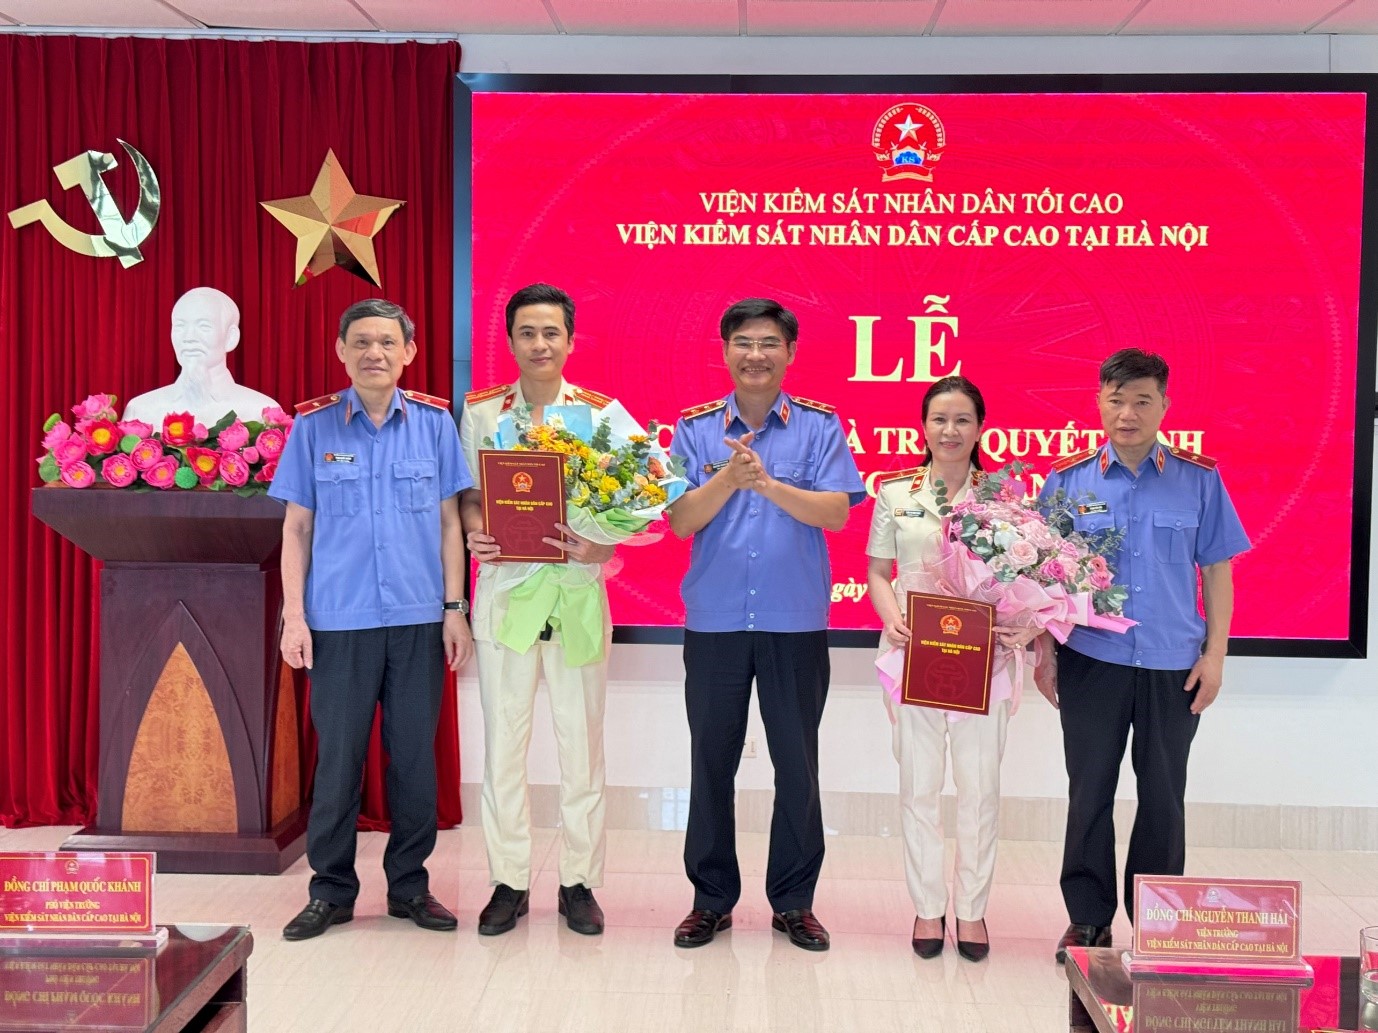 Viện kiểm sát nhân dân cấp cao tại Hà Nội tổ chức Lễ công bố và trao các quyết định về công tác cán bộ